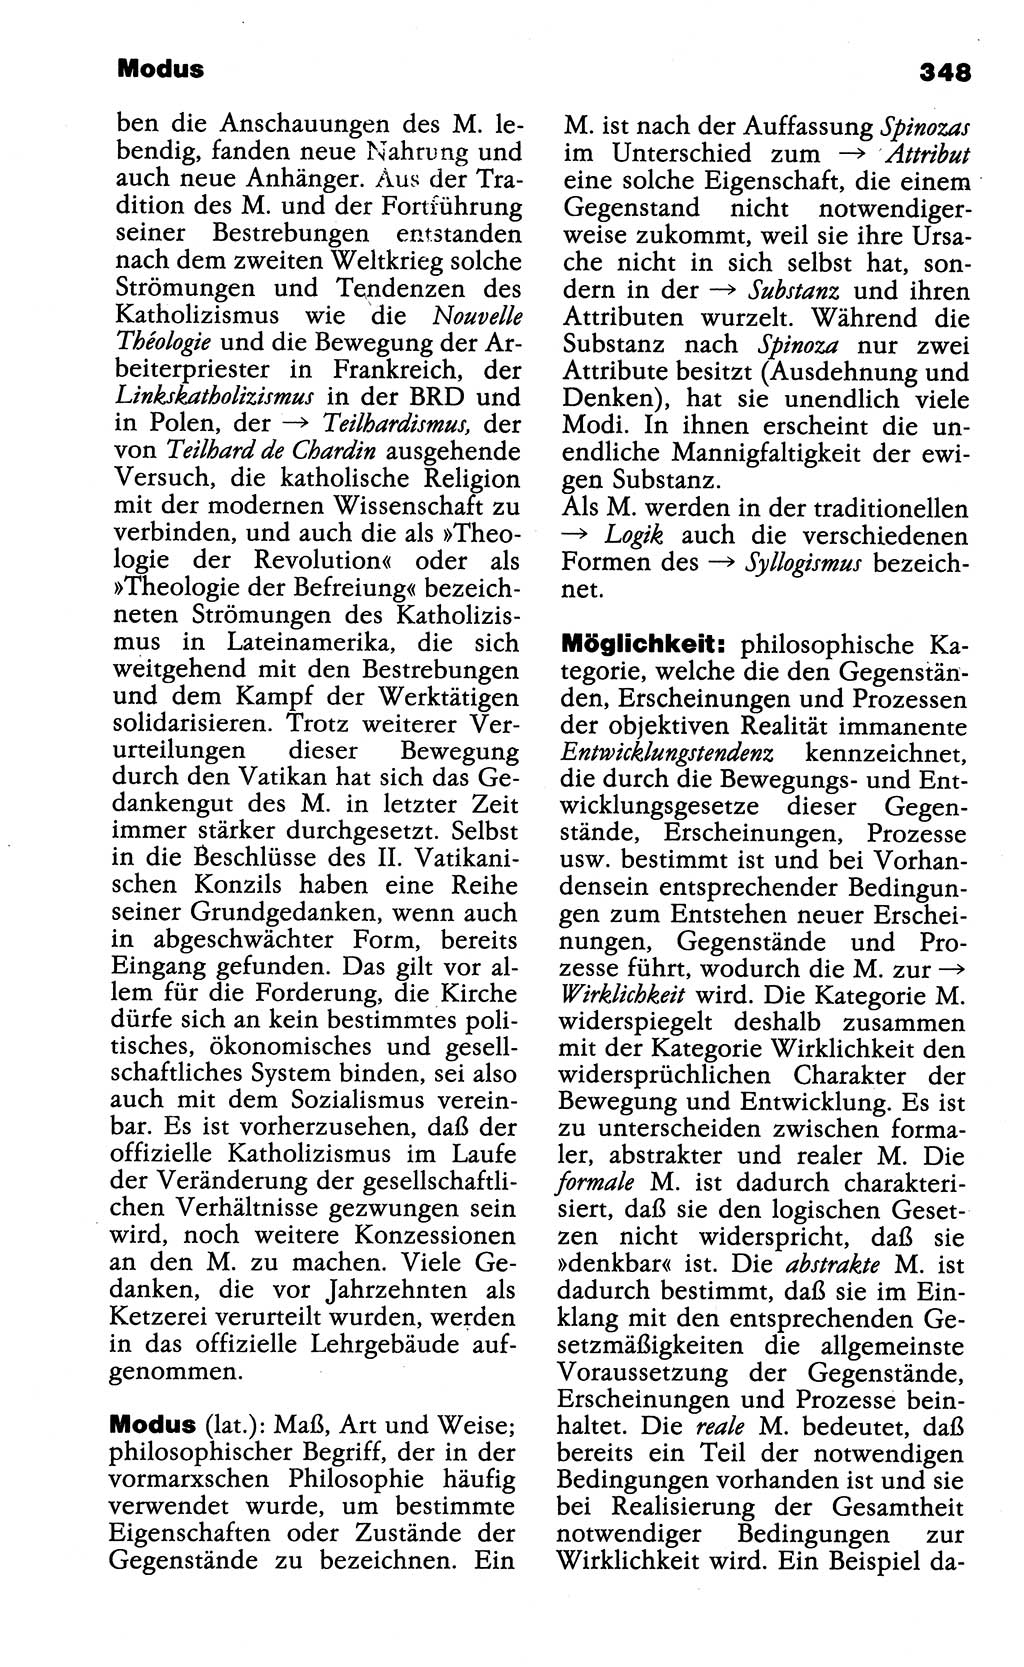 Wörterbuch der marxistisch-leninistischen Philosophie [Deutsche Demokratische Republik (DDR)] 1985, Seite 348 (Wb. ML Phil. DDR 1985, S. 348)